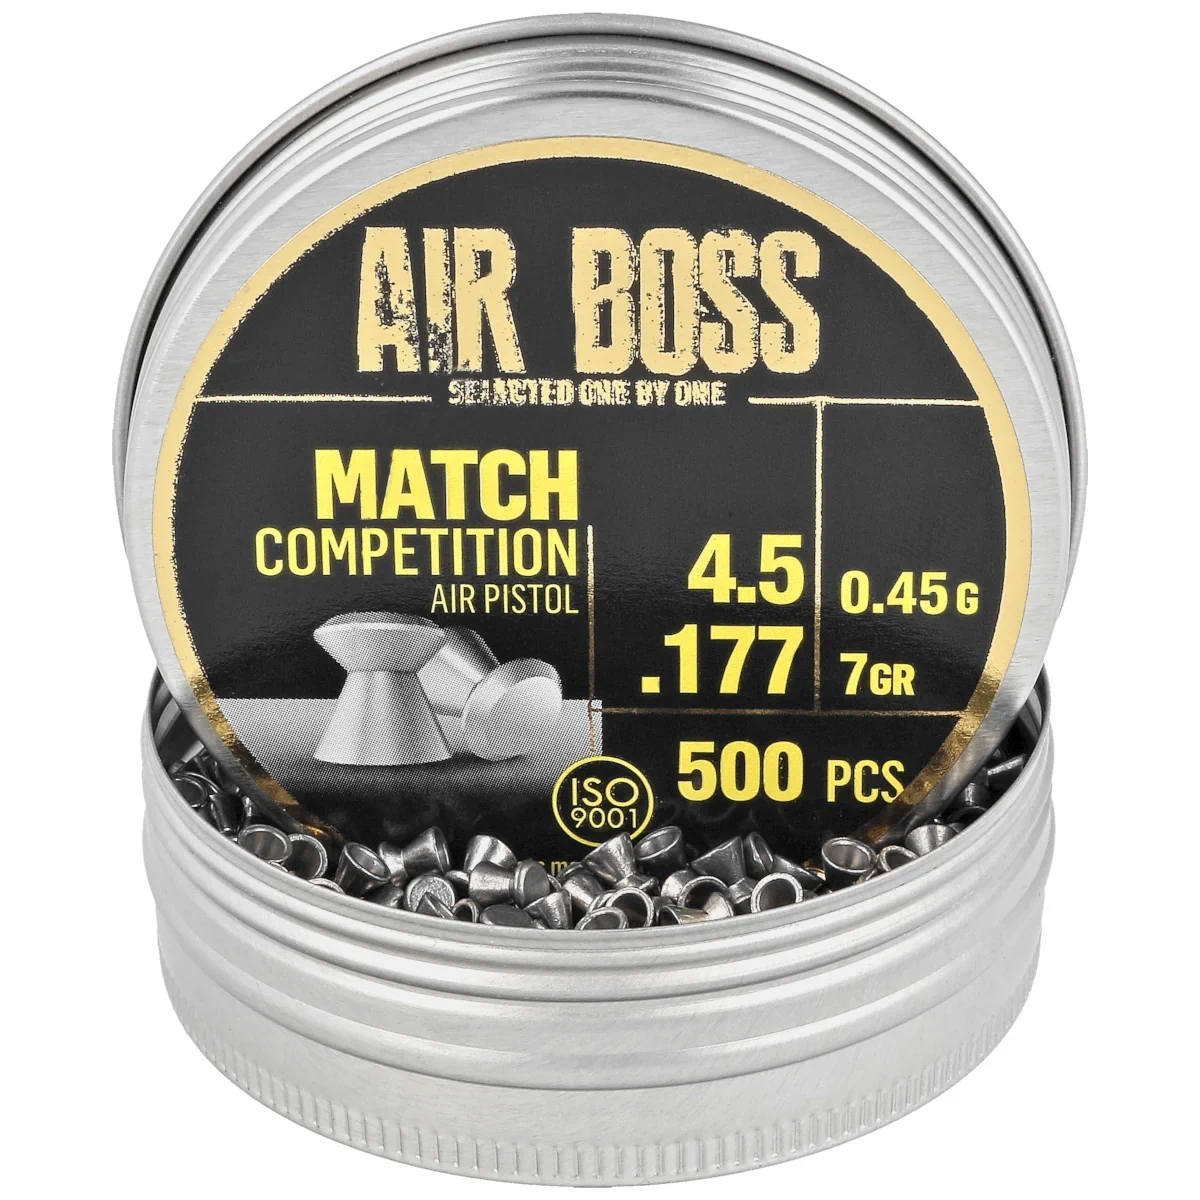 Balines Apolo Modelo Match Competition Air Boss Calibre 5.5 Lata 250  Unidades.